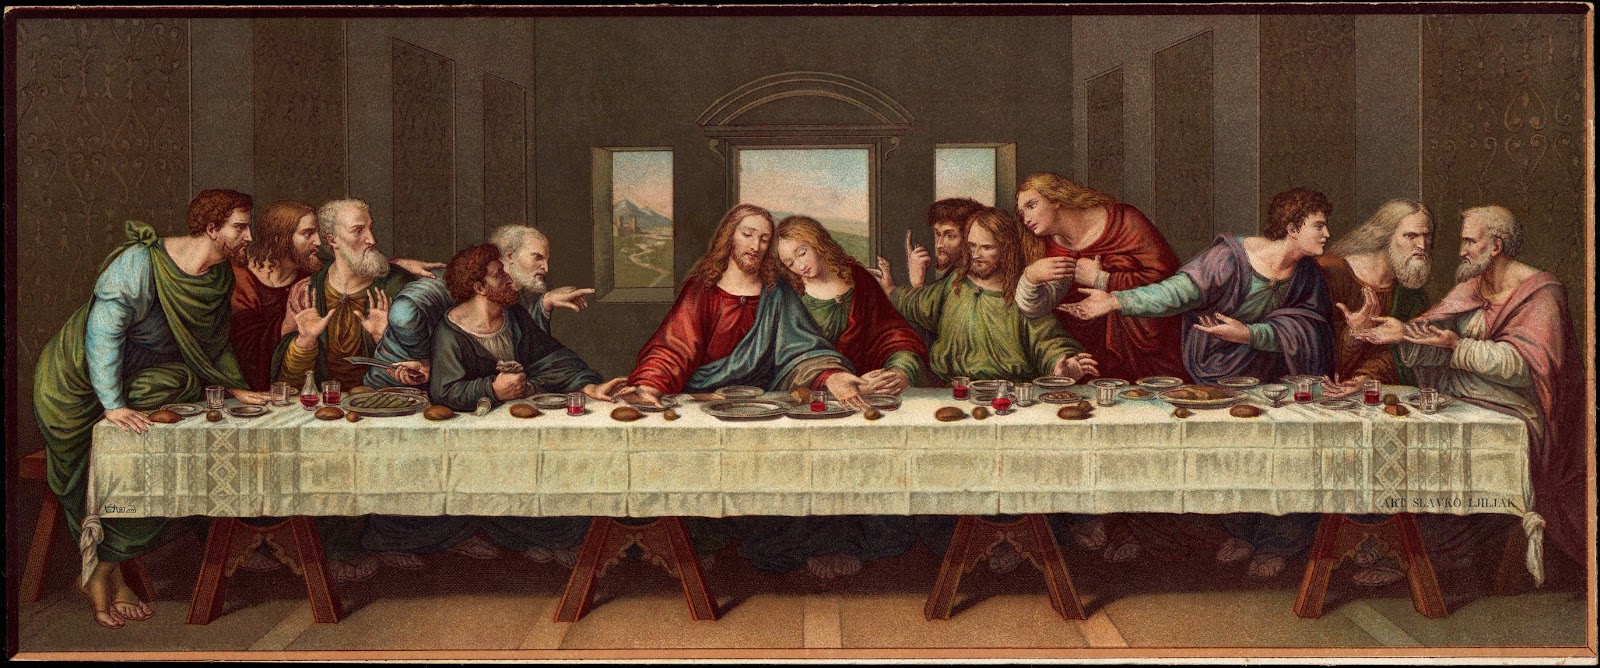 Картина «Тайная вечеря», Леонардо да Винчи — описание картины